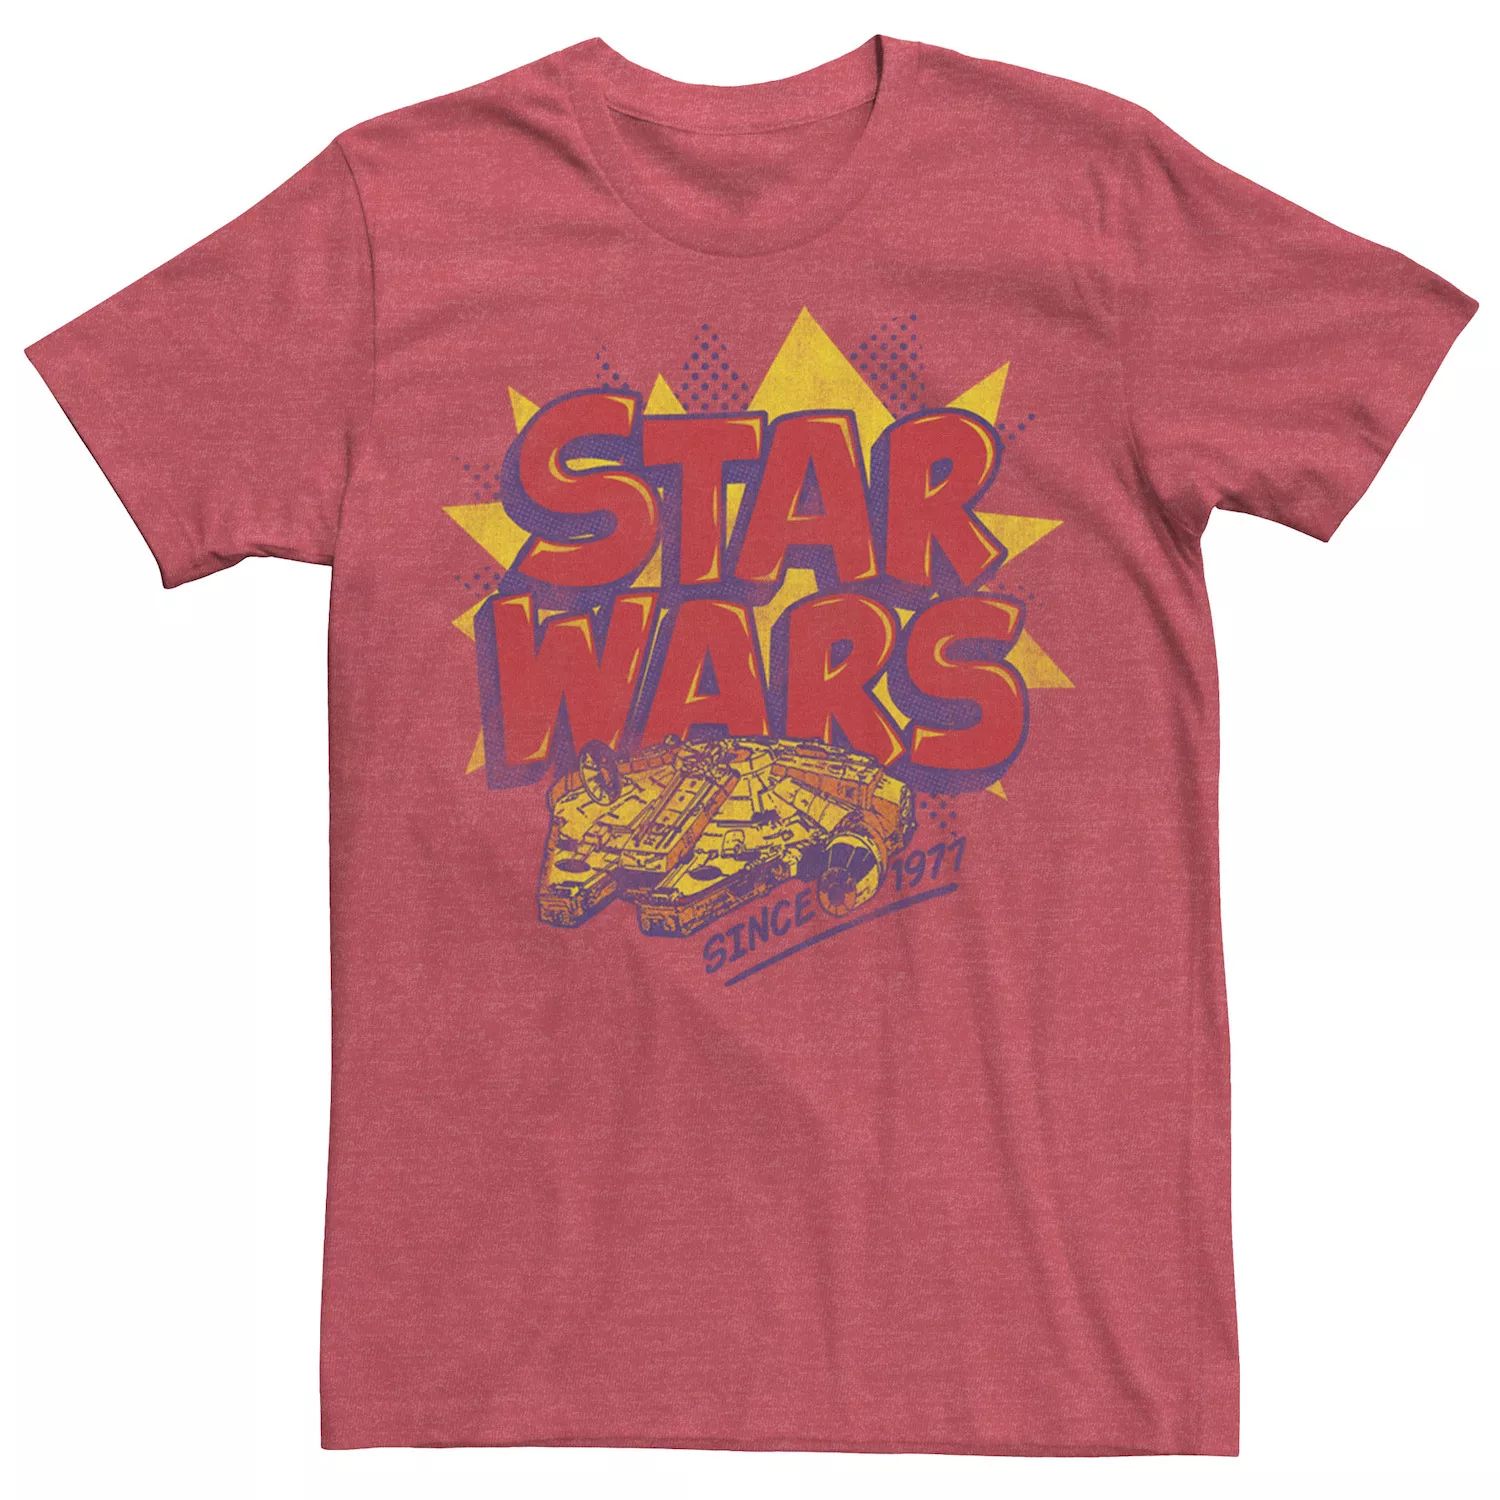 Мужская футболка с логотипом комиксов «Звездные войны: Сокол тысячелетия» Star Wars мужская спортивная футболка звездные войны сокол тысячелетия star wars